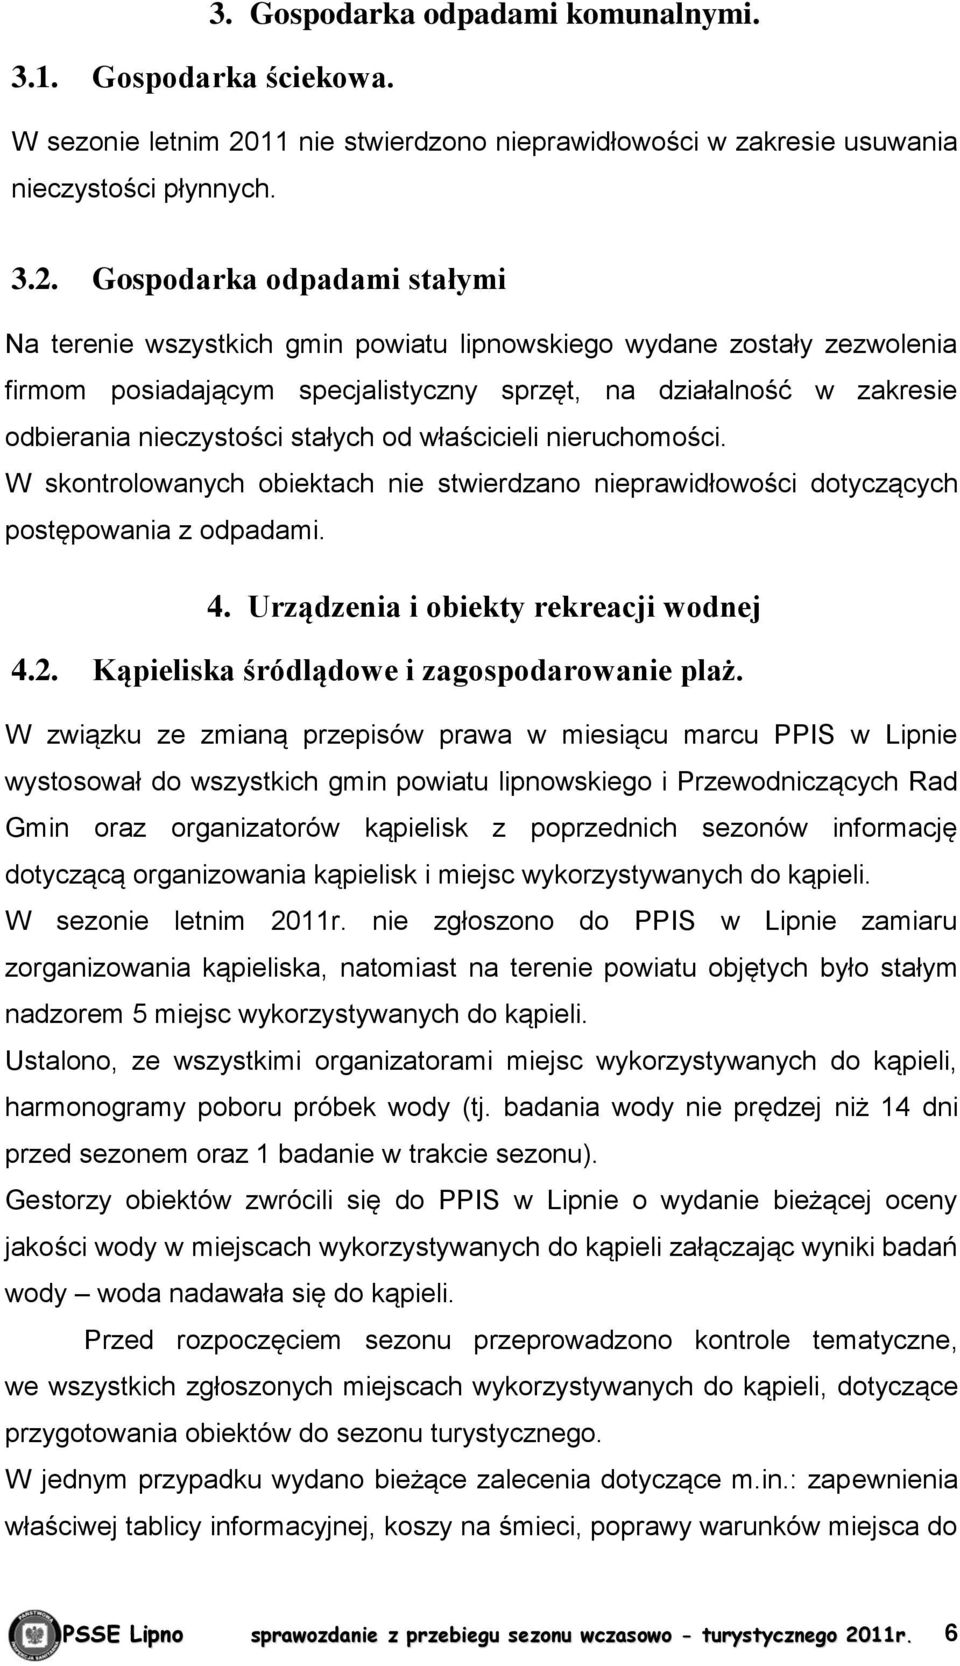 Gospodarka odpadami stałymi Na terenie wszystkich gmin powiatu lipnowskiego wydane zostały zezwolenia firmom posiadającym specjalistyczny sprzęt, na działalność w zakresie odbierania nieczystości